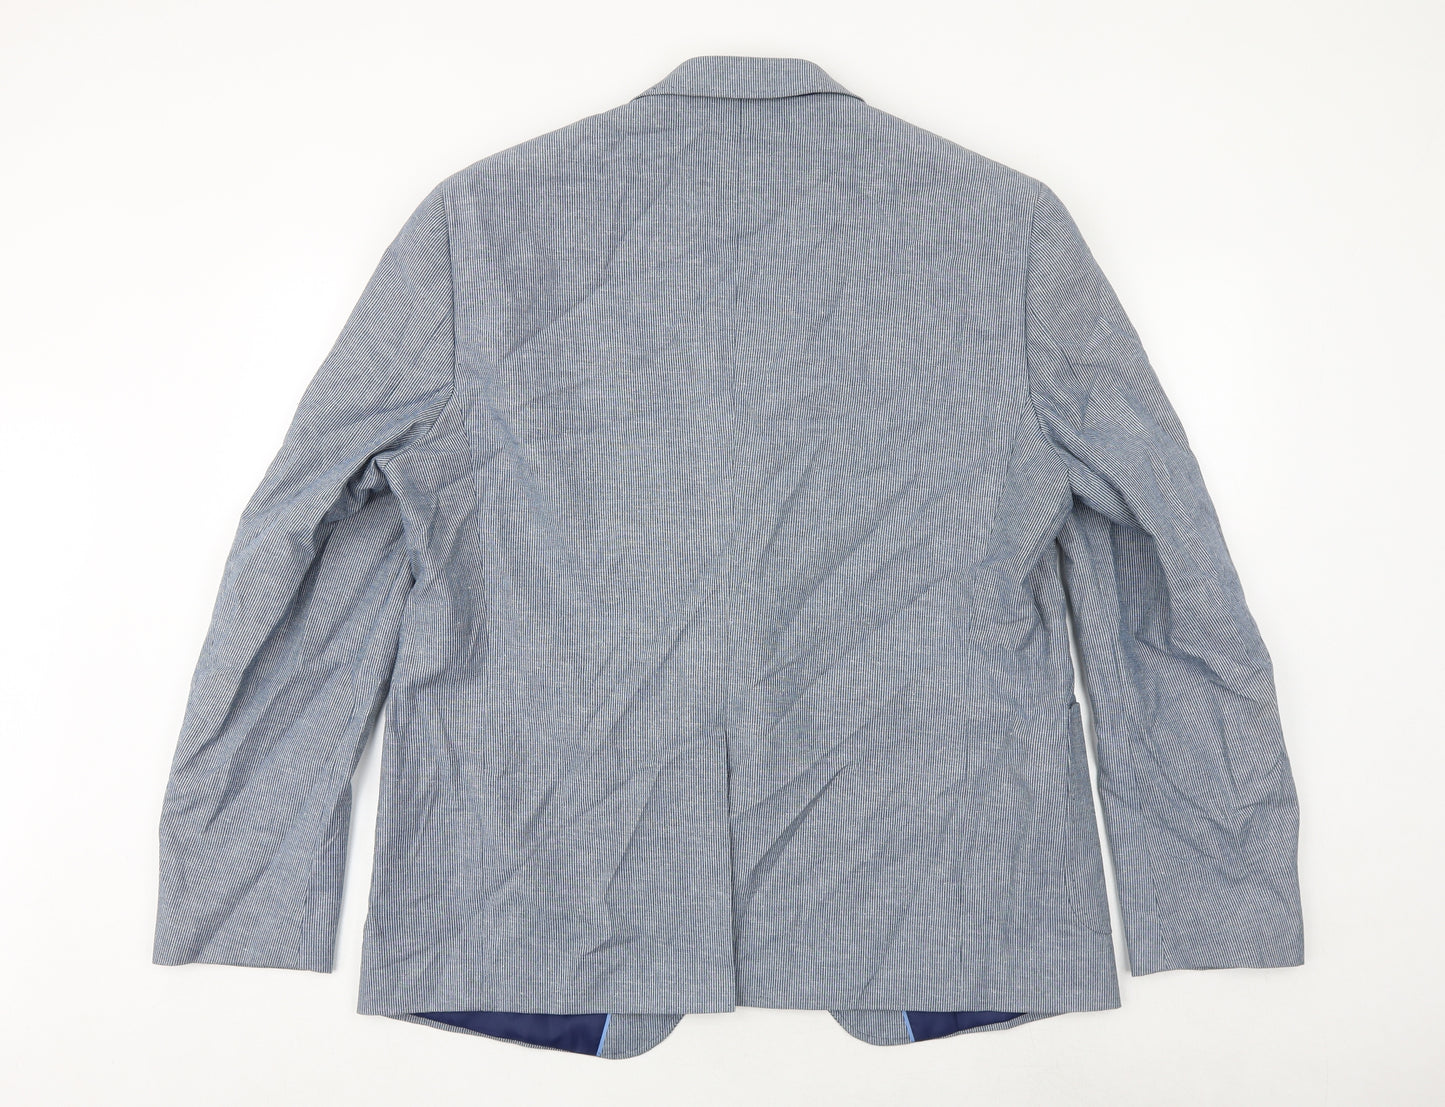 Marks and Spencer Mens Blue Cotton Jacket Suit Jacket Size 46 Regular